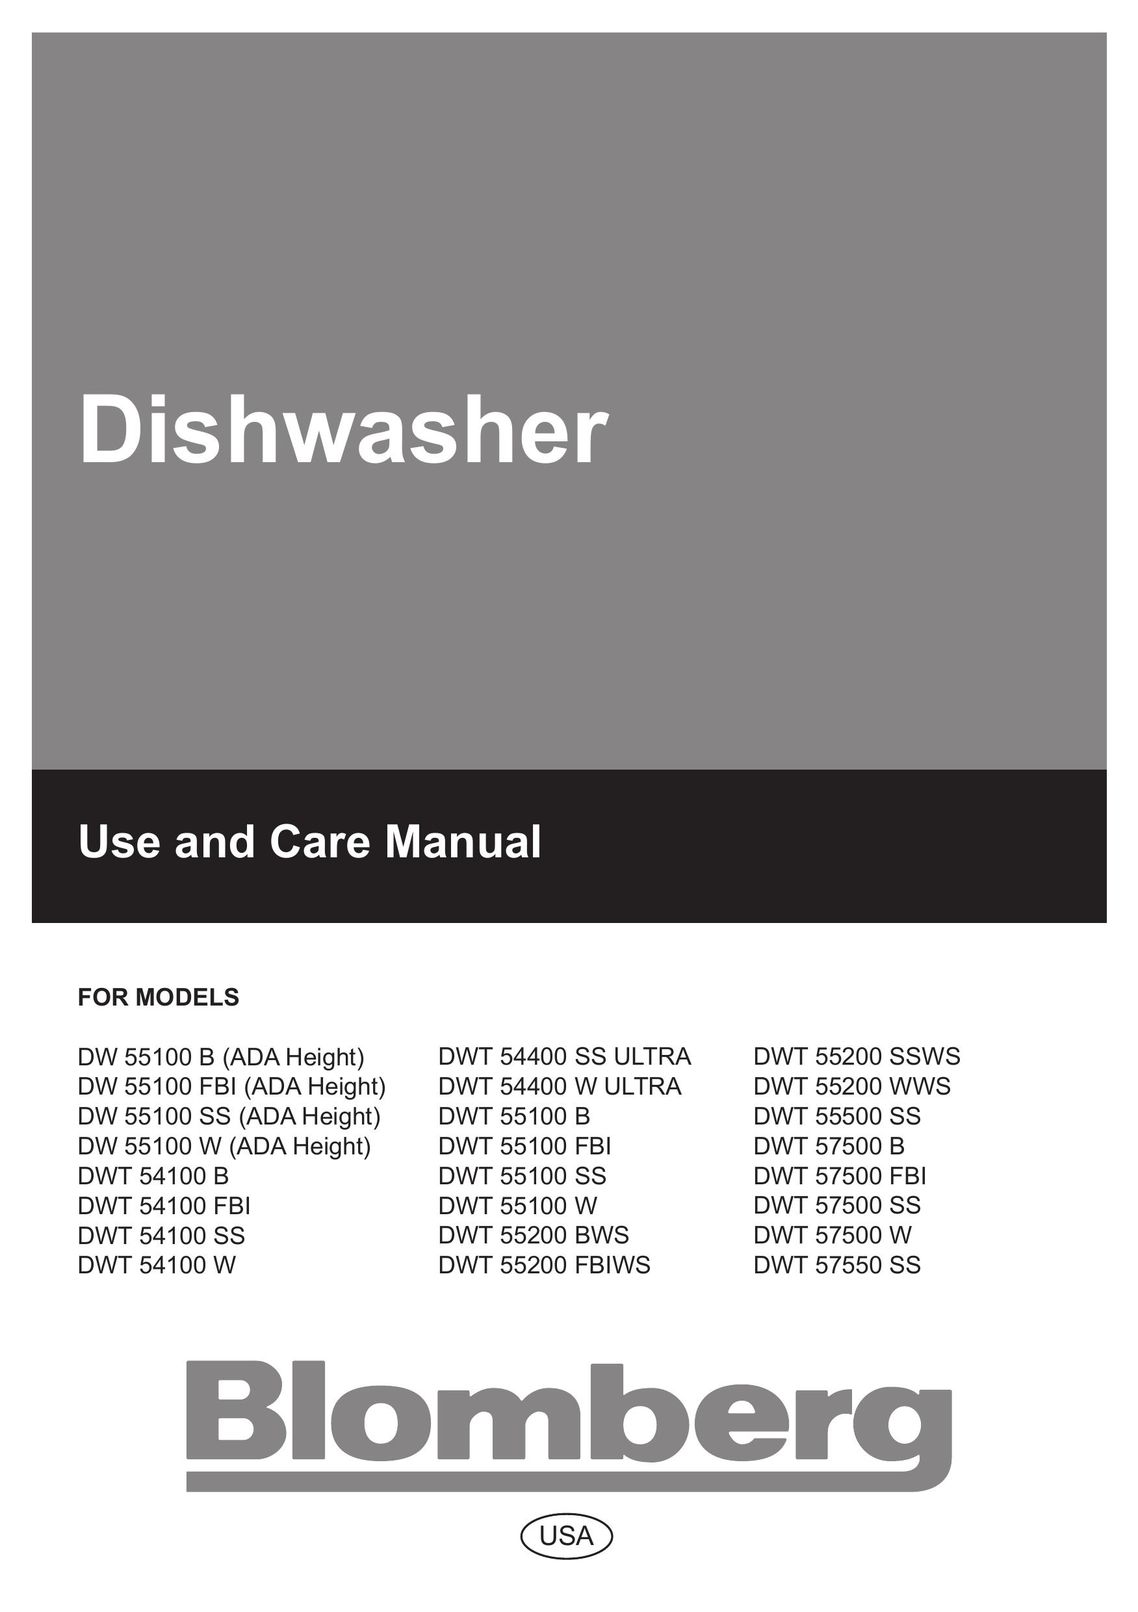 Blomberg DW 57550 SS Dishwasher User Manual